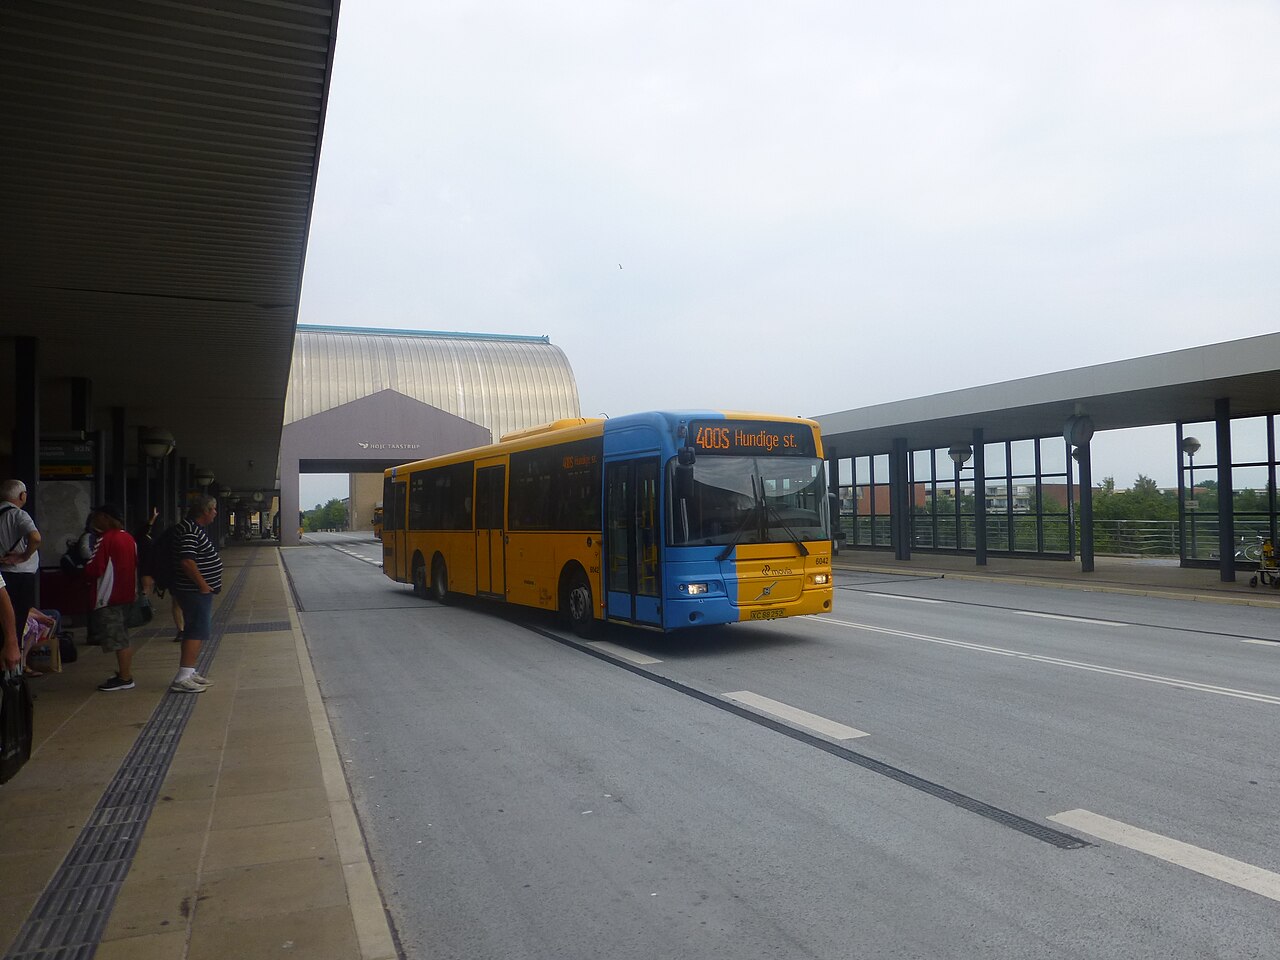 Morgenøvelser lærling kode File:Movia bus line 400S at Høje Taastrup Station.jpg - Wikimedia Commons